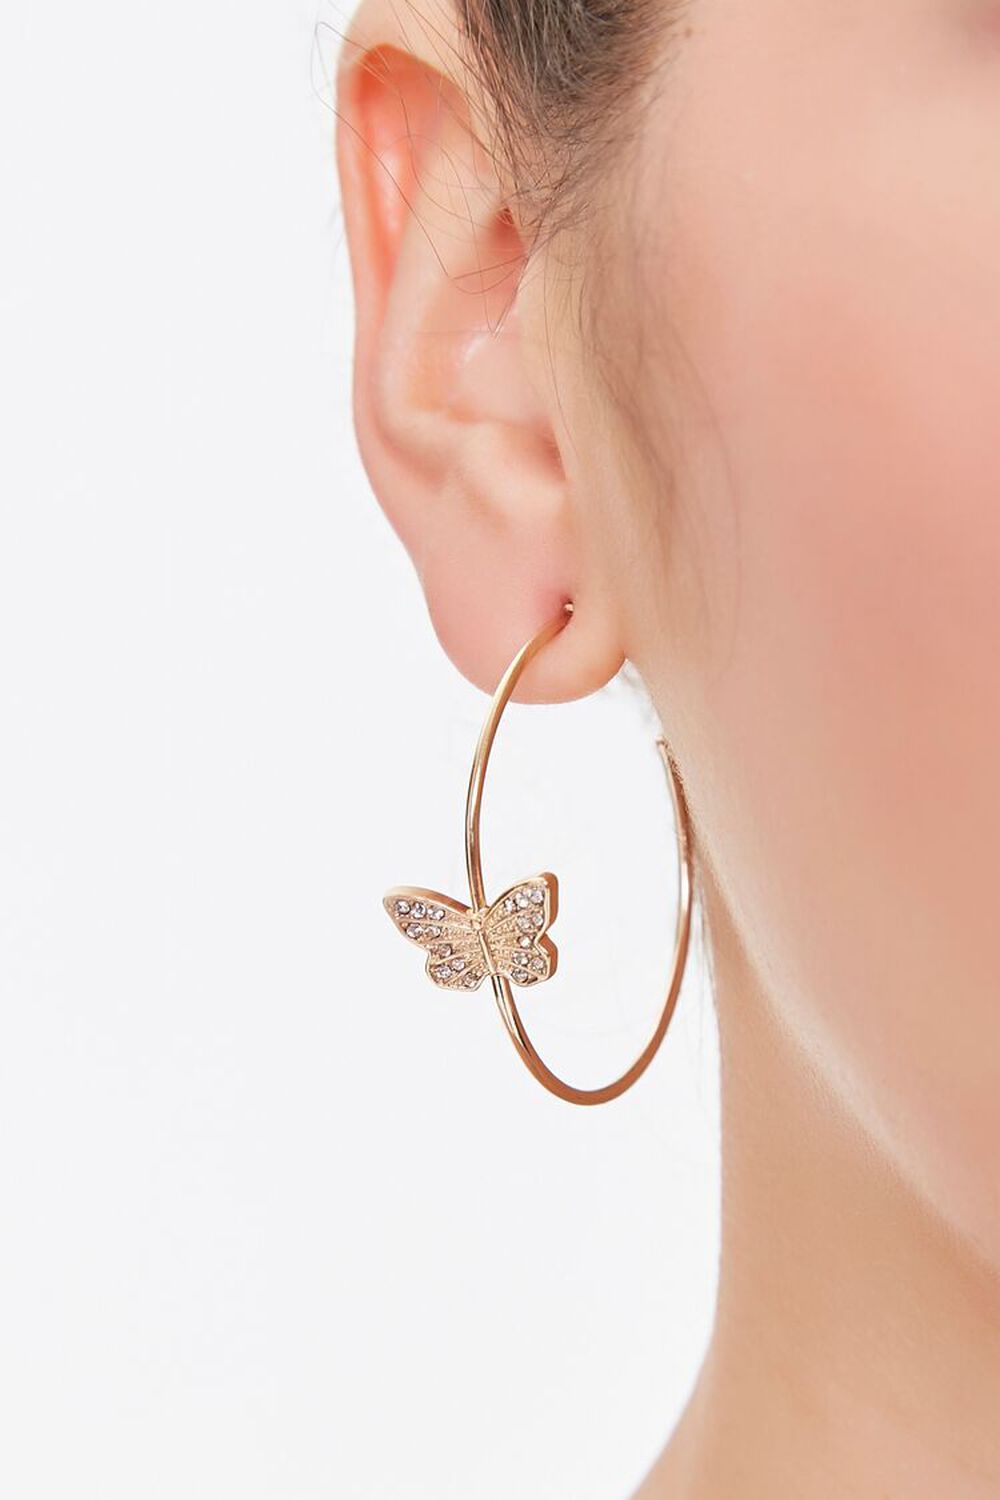 GOLD Rhinestone Butterfly Hoop Earrings, image 1